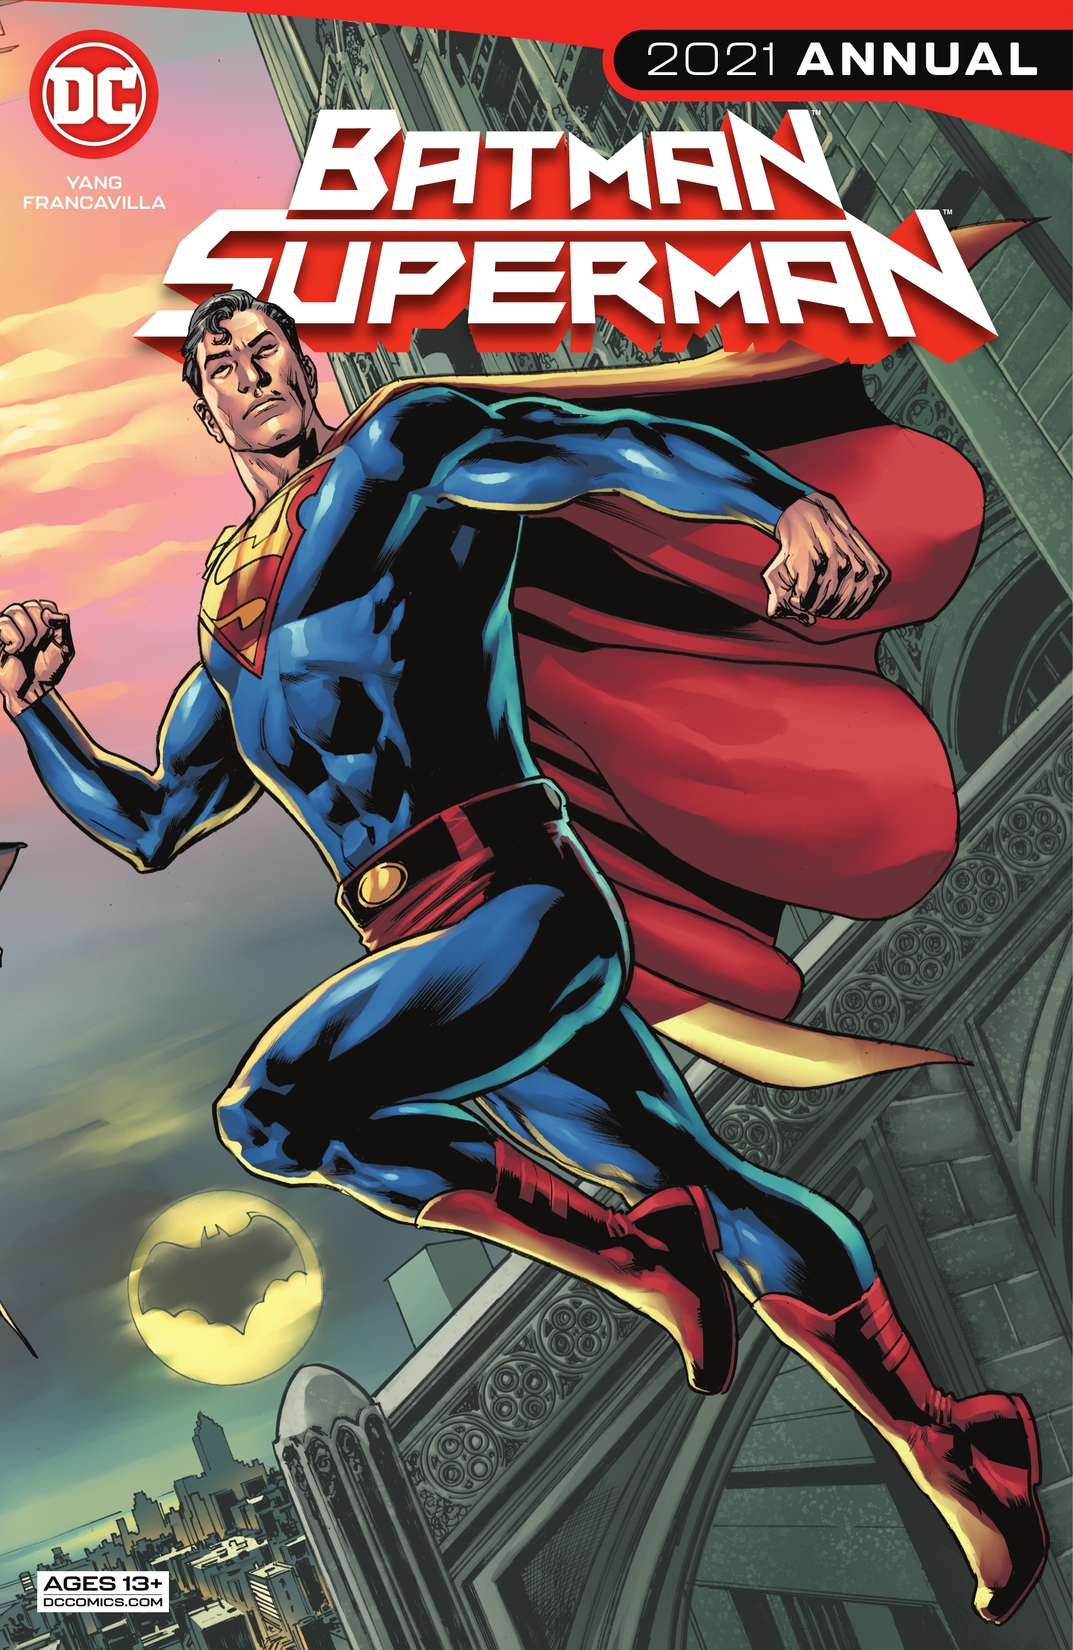 Batman/Superman 2021 Annual (2021) #1 preview images